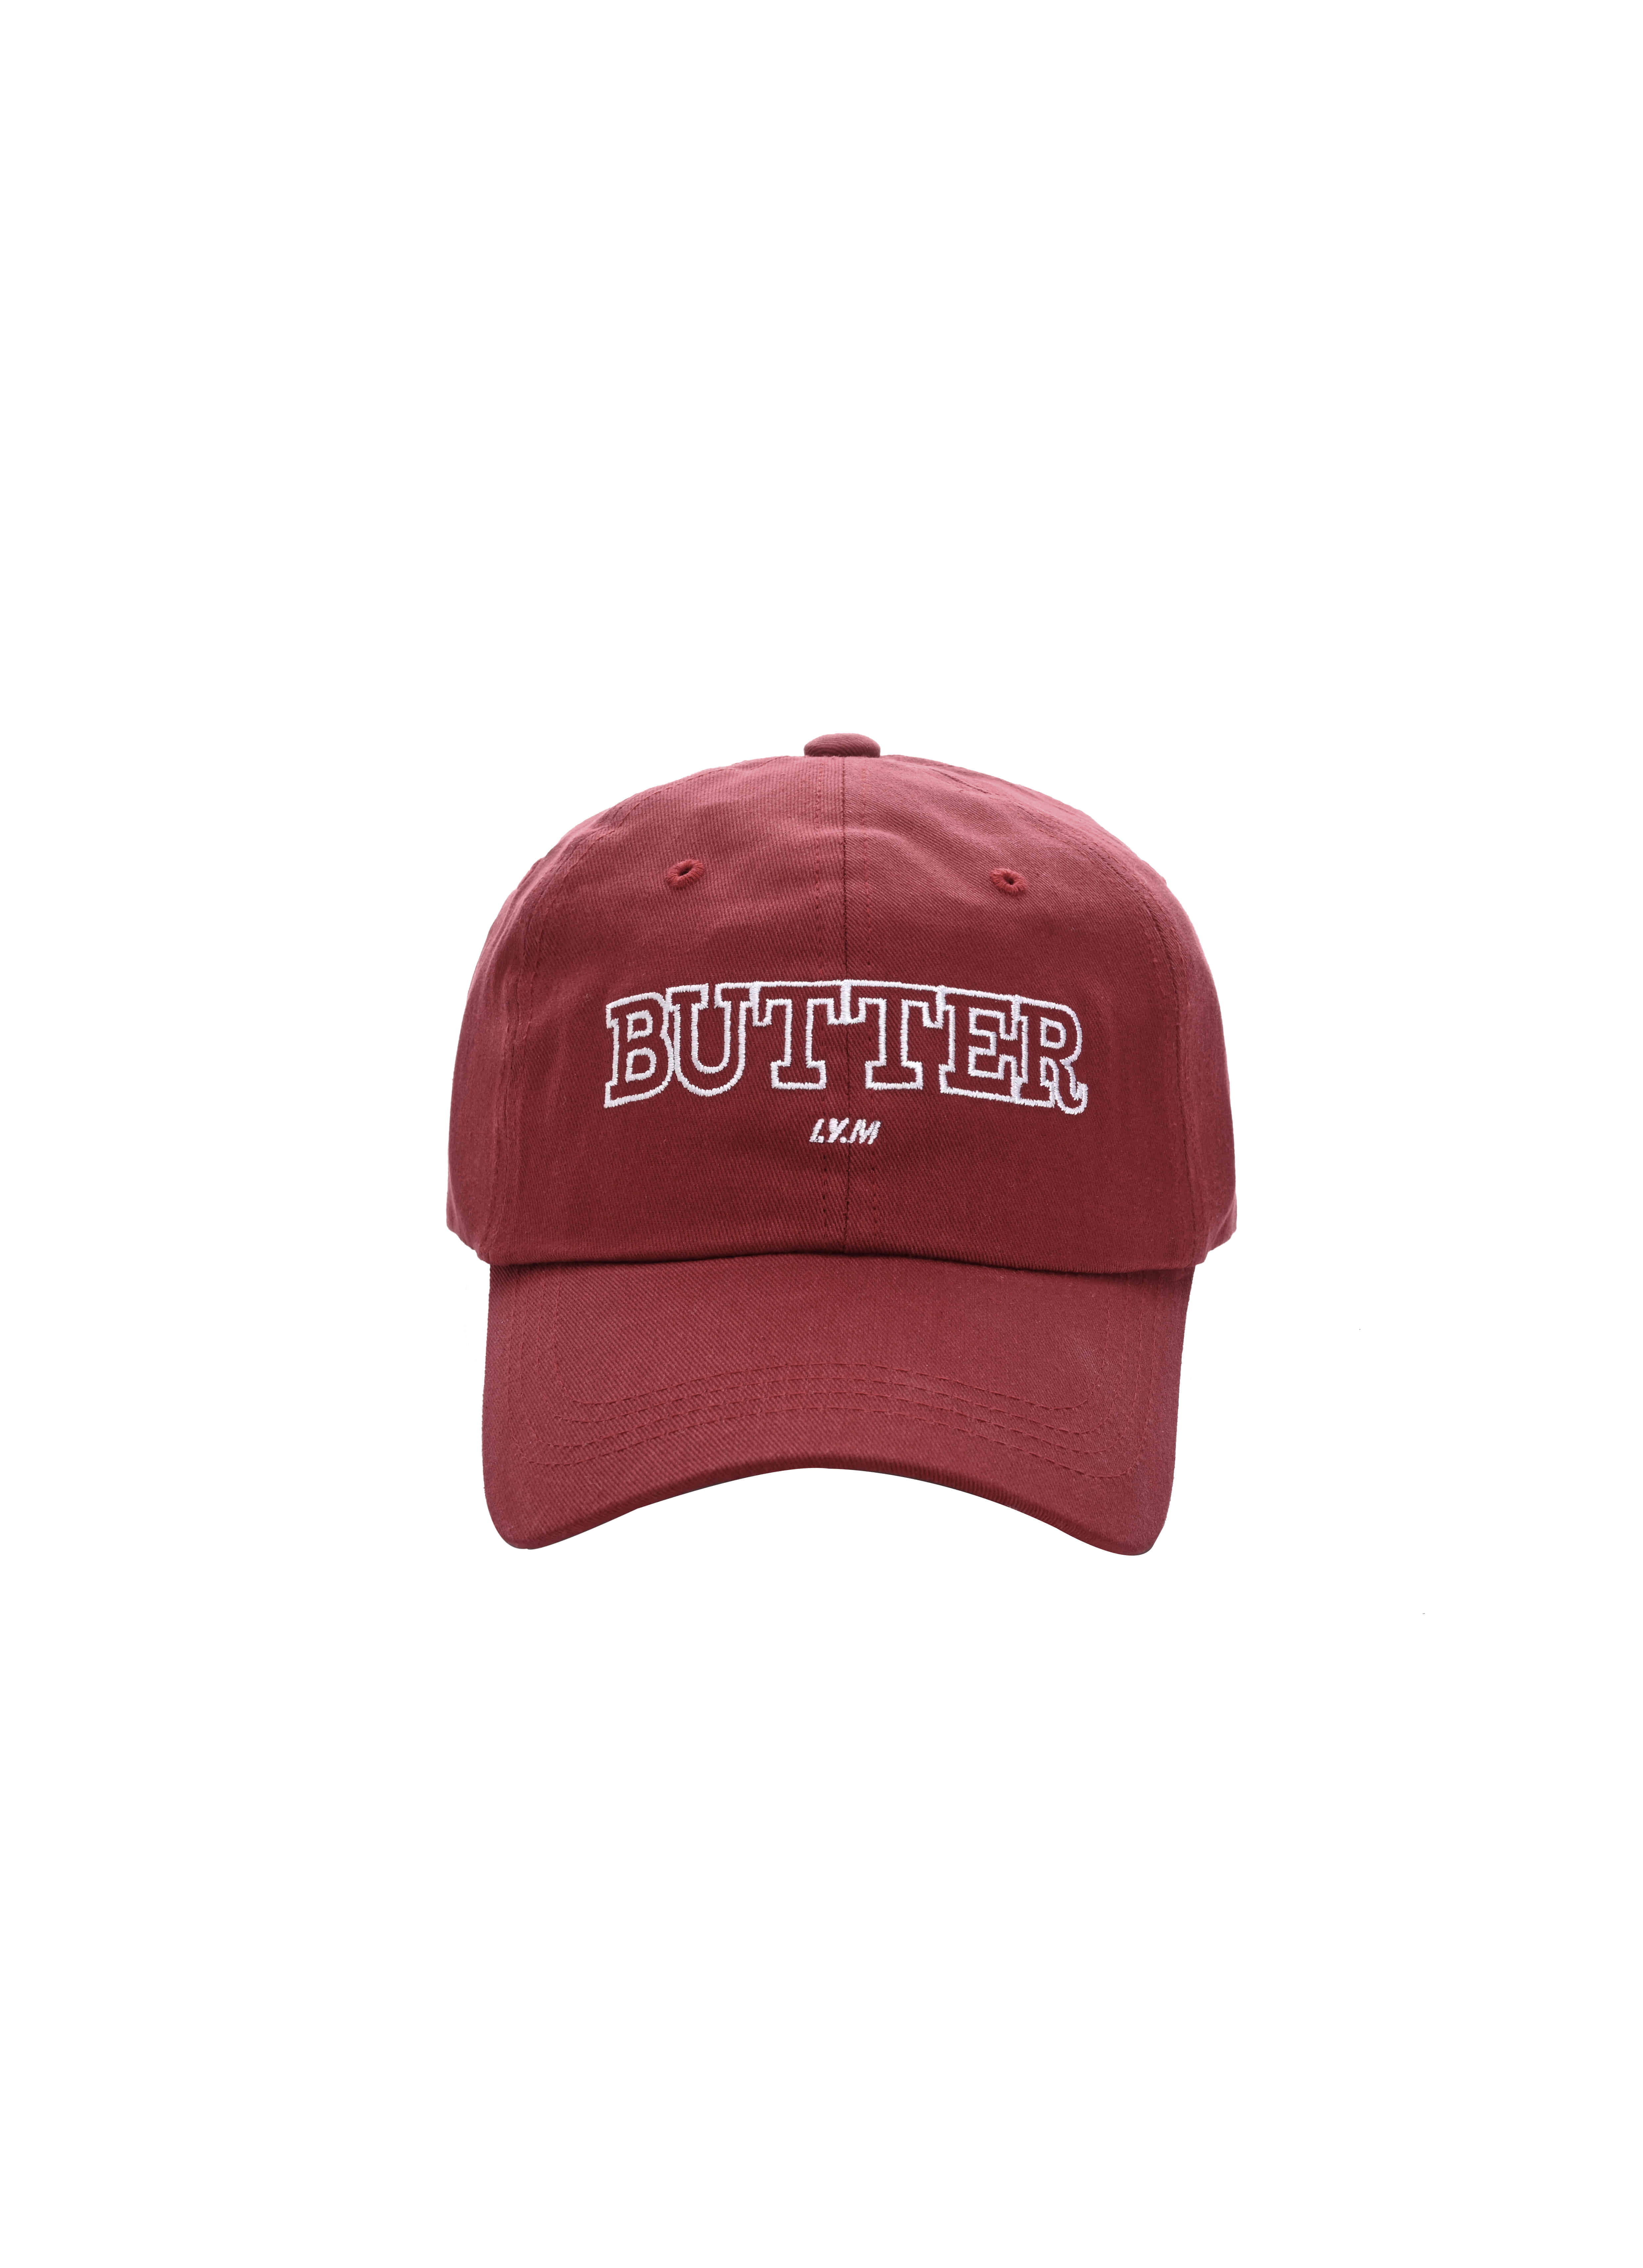 30%--butter cap(red)